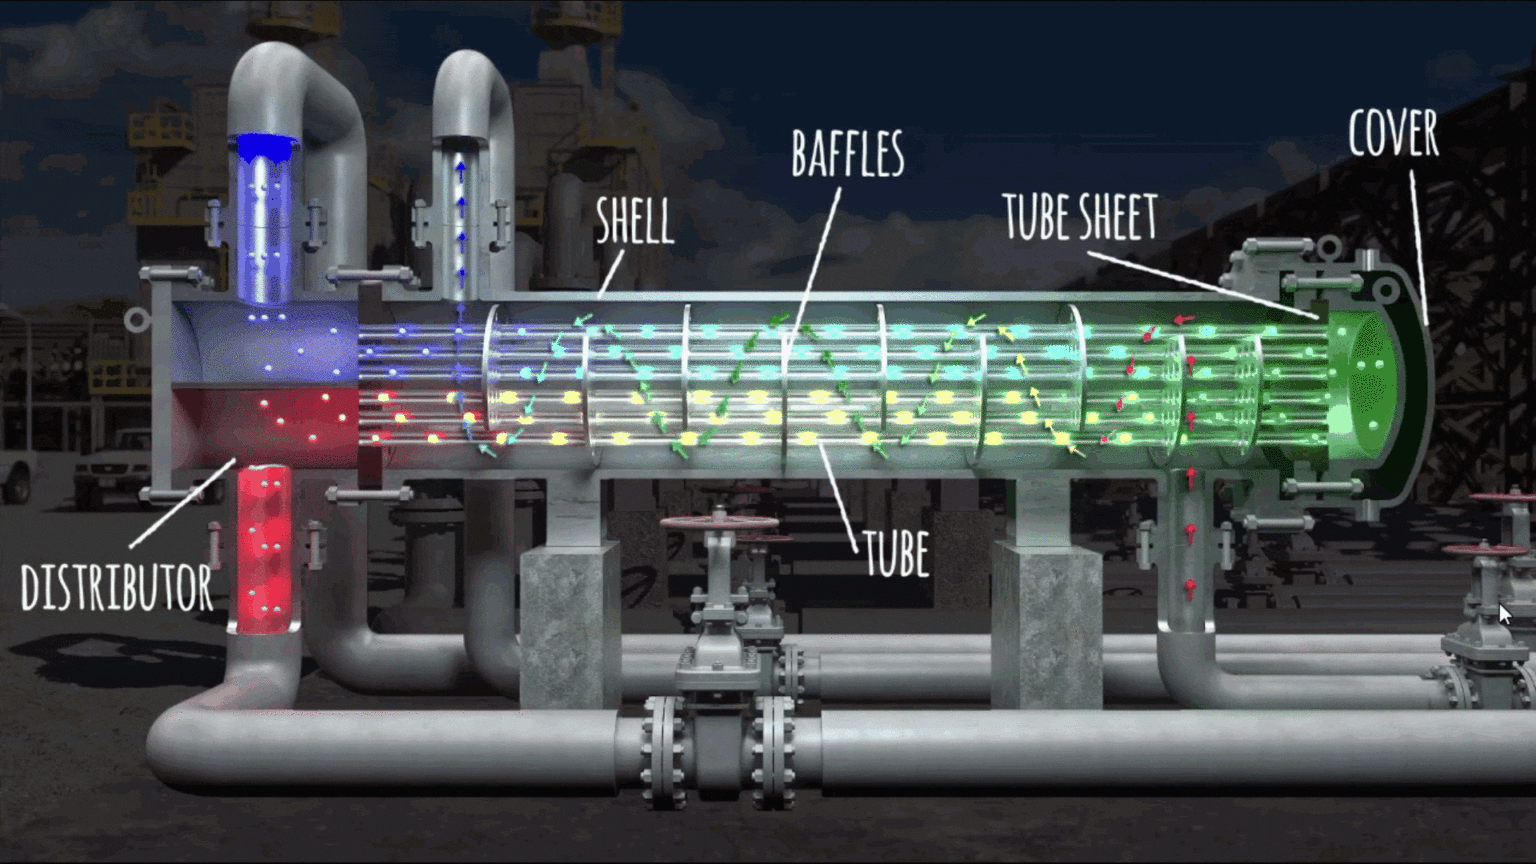 Infografía detallada de la simulación en 3D de intercambiadores carcasa tubo para optimización de su funcionamiento.